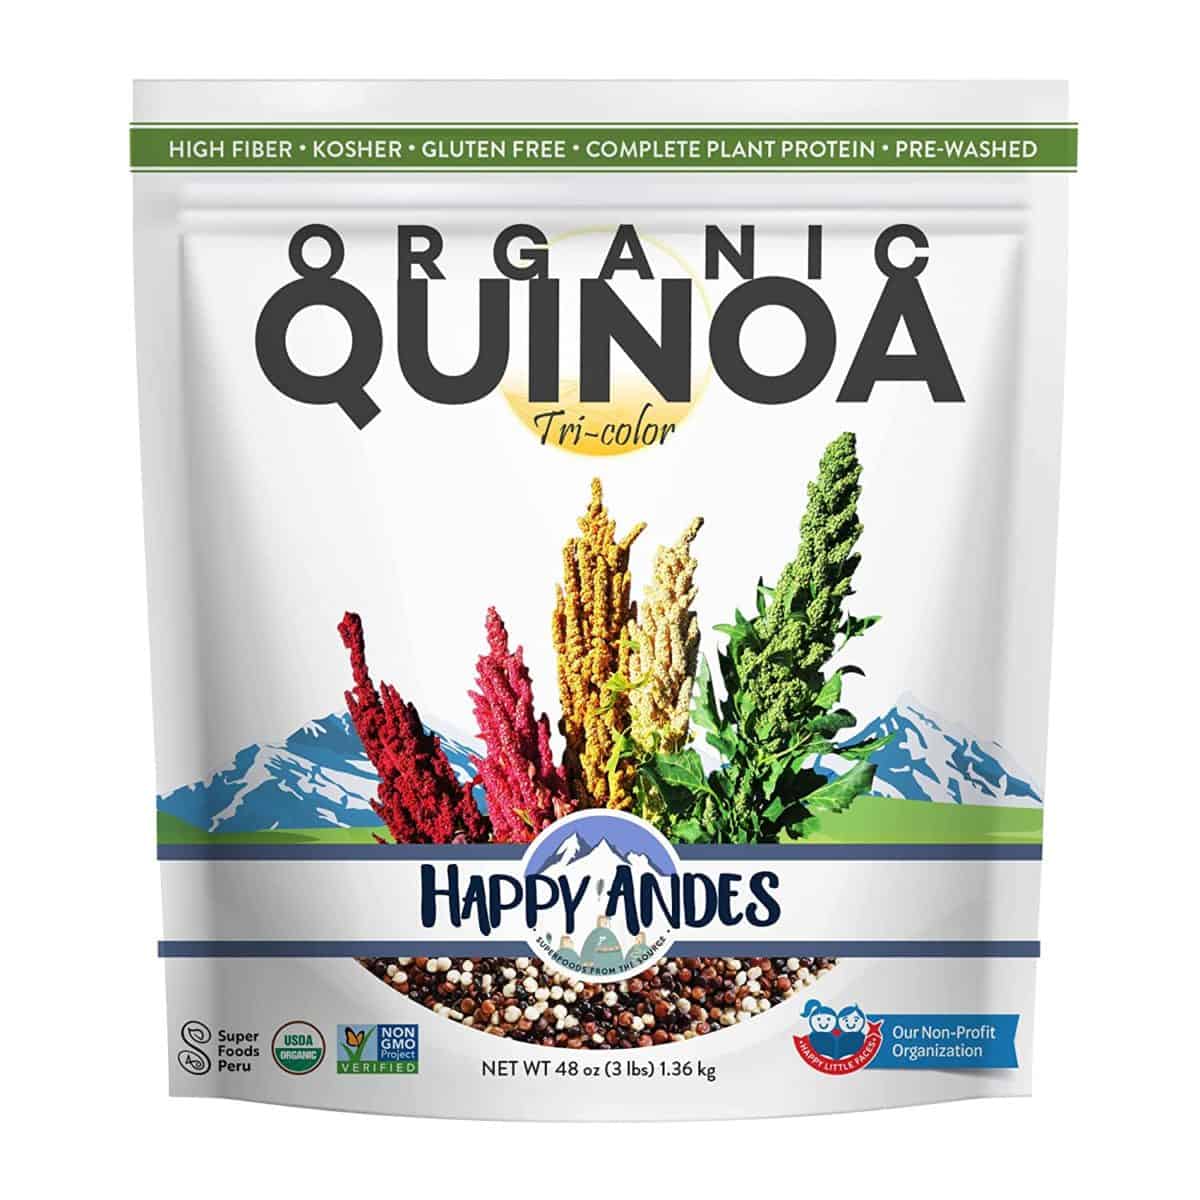 Quinoa ka mebala e meraro e le sebaka sa raese ea basmati